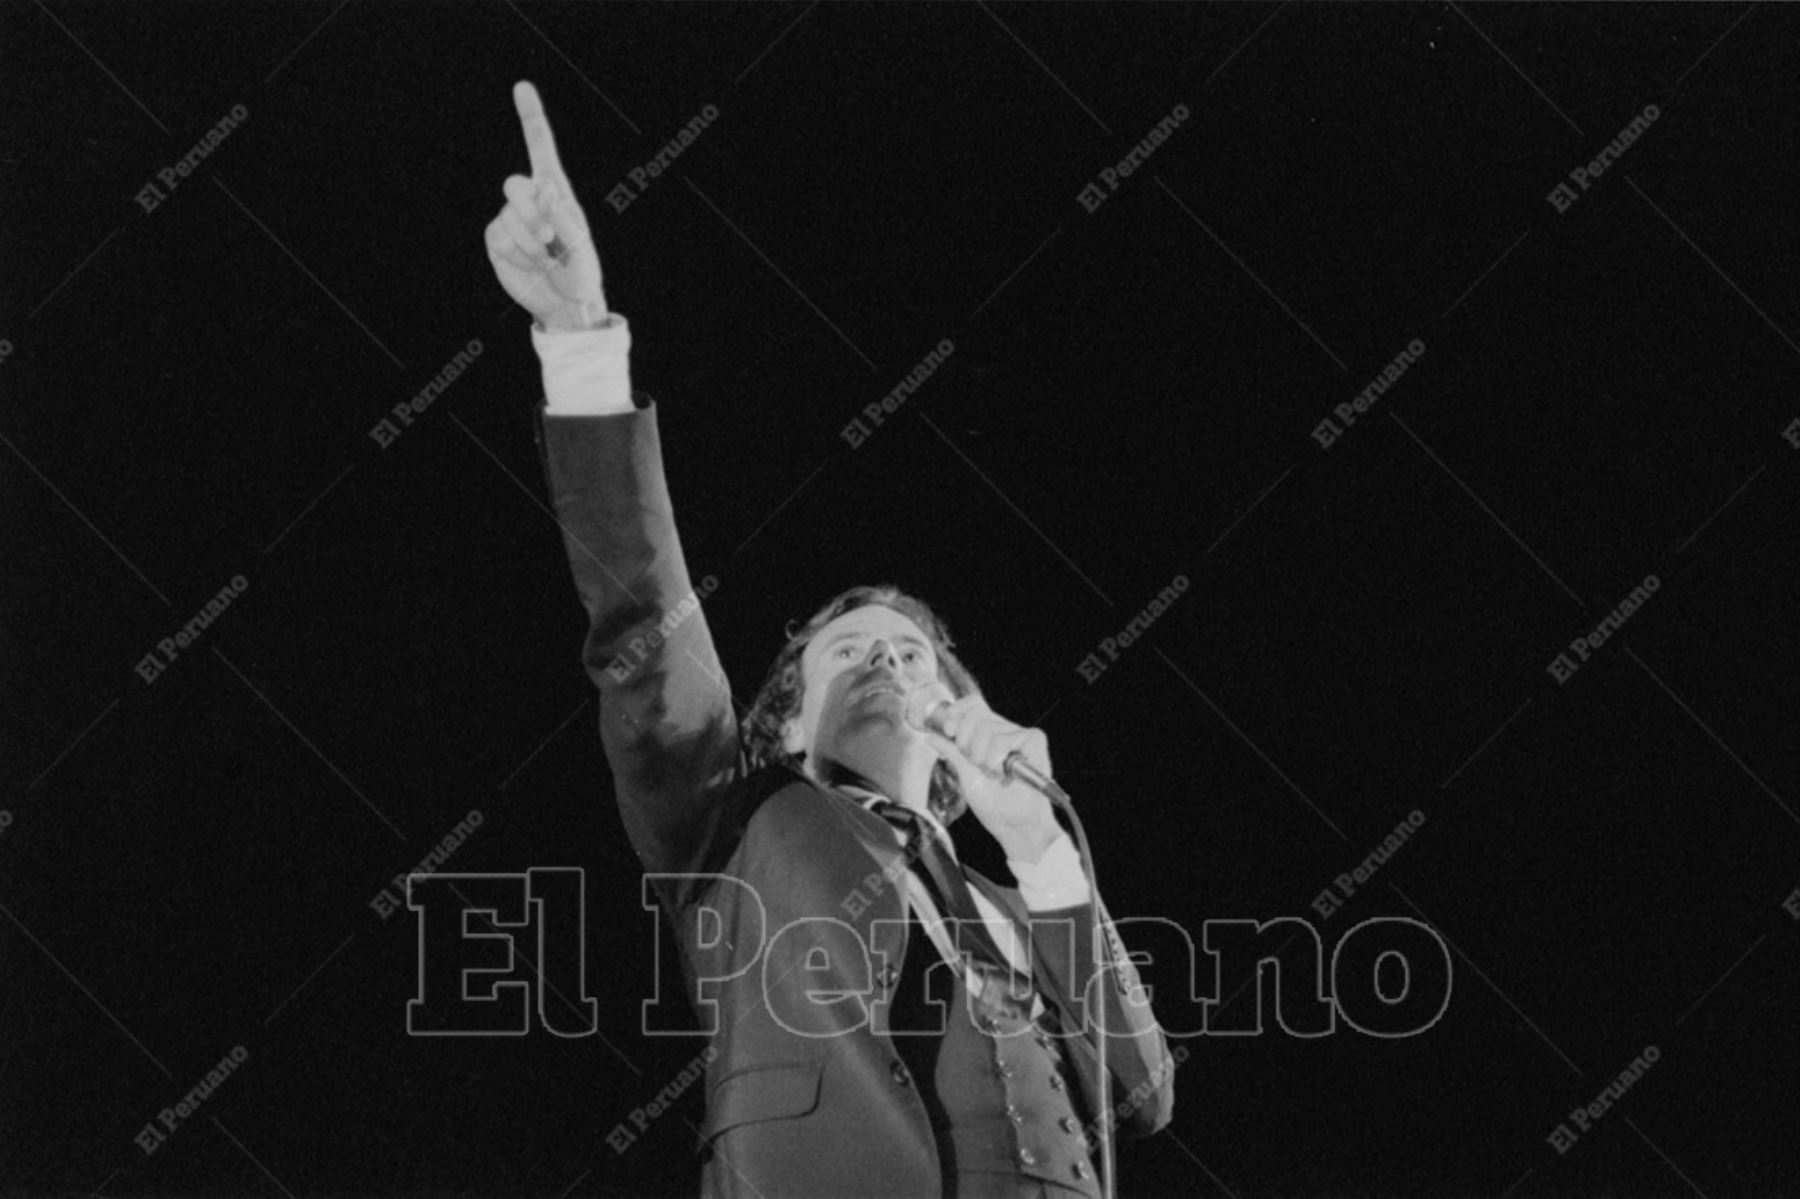 Lima - 16 diciembre 1980 / Concierto del cantante español Julio Iglesias en el Estadio Nacional.  Foto: Archivo Histórico de El Peruano / Américo Alburquerque